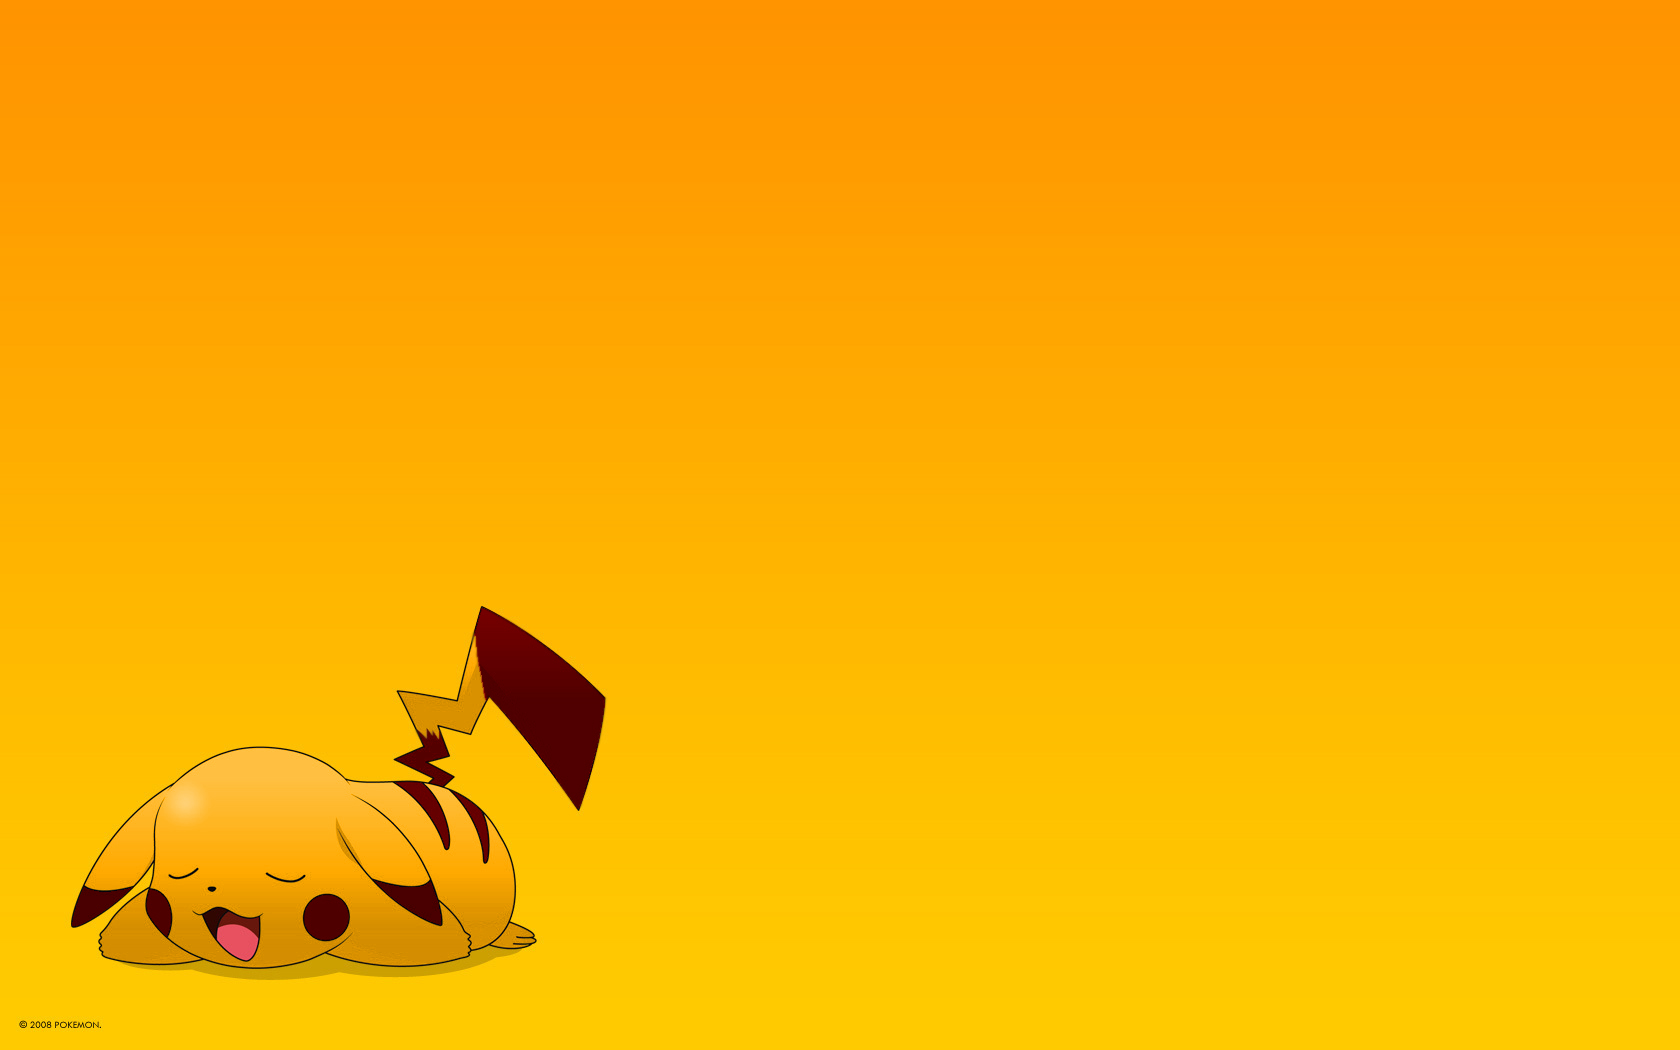 Pikachu Una De Las Criaturas Ficticias Pok Mon Es El